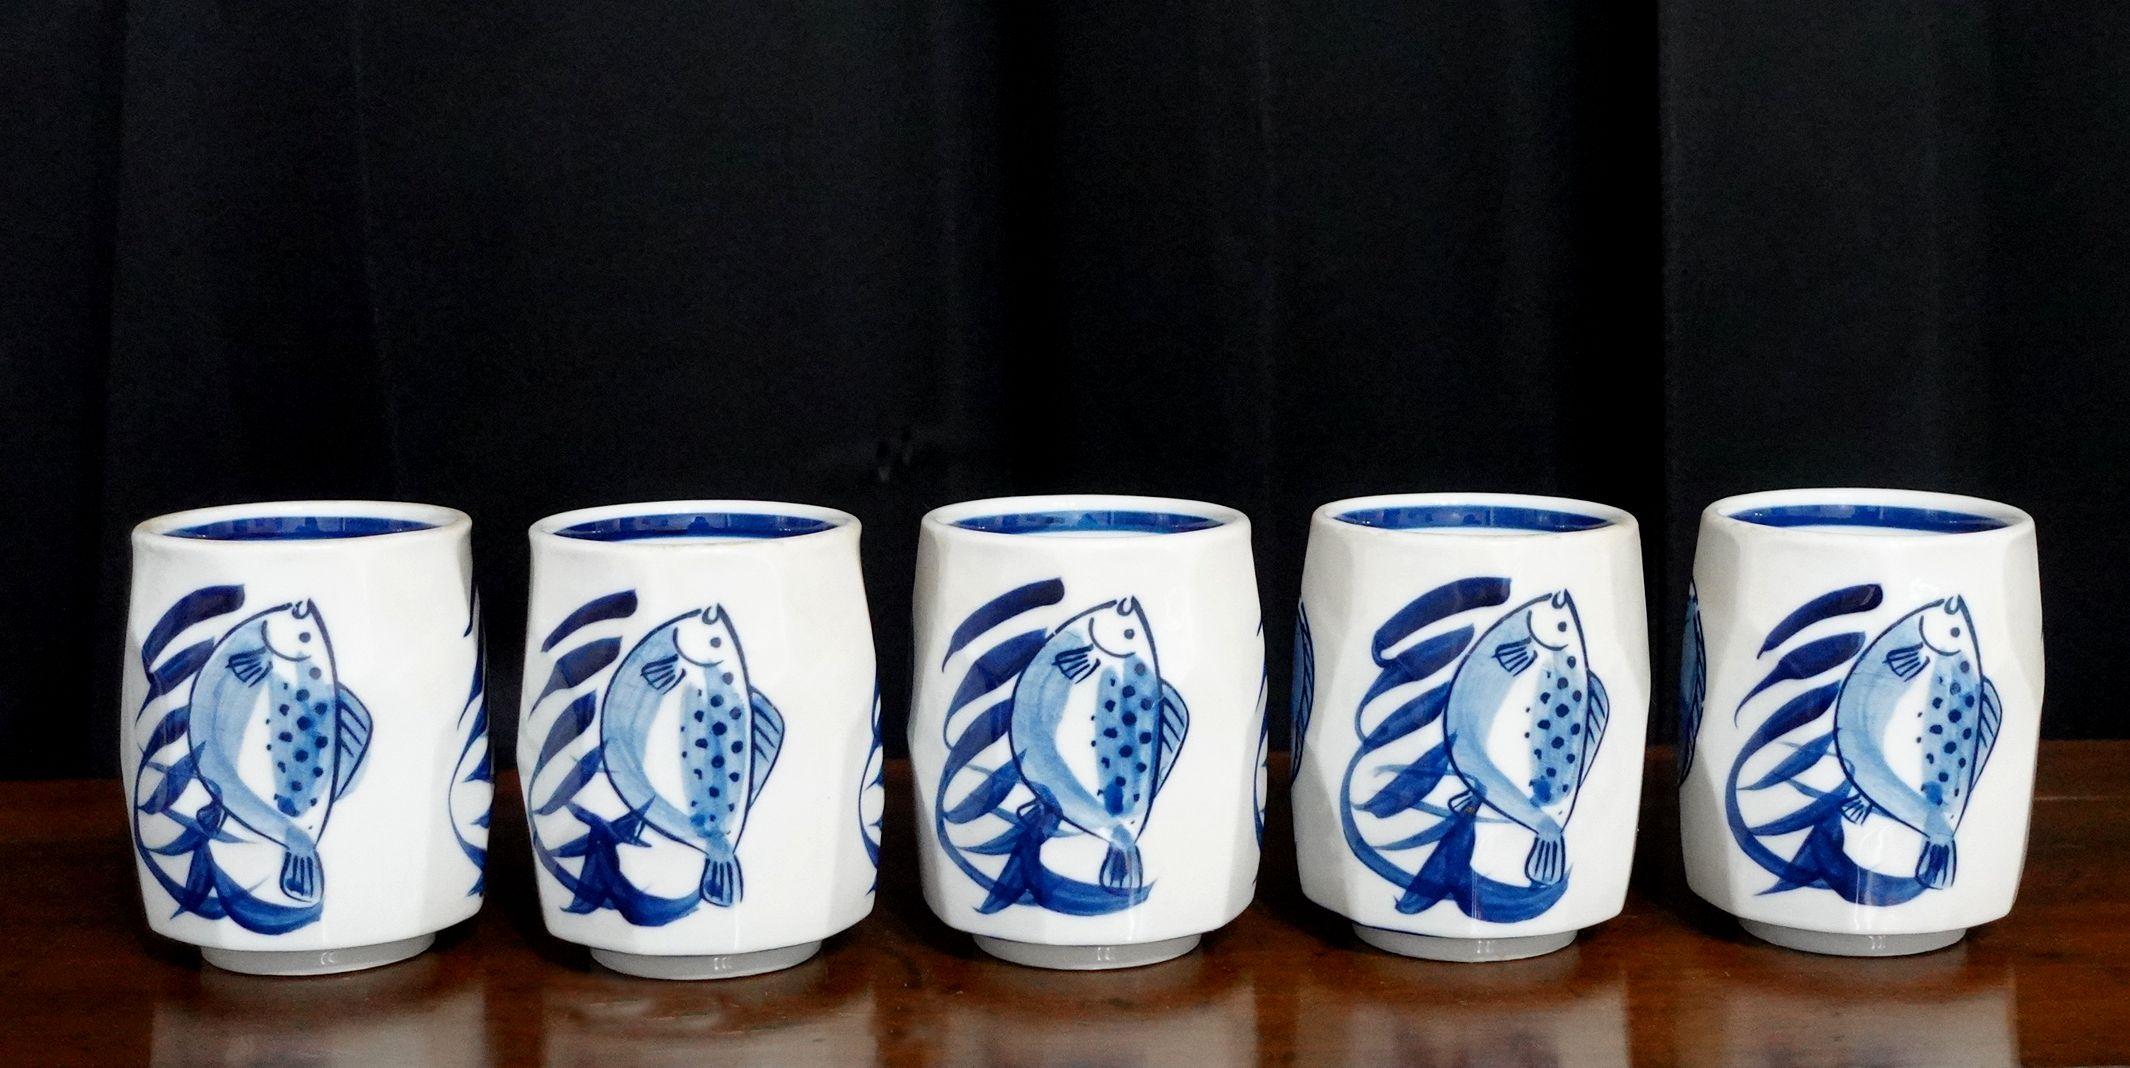 5 grandes tasses à thé japonaises bleues et blanches en poterie d'atelier du milieu du siècle,
représentant de grands poissons et des crevettes.
En bon état neuf d'origine et juste trouvé dans l'entrepôt, jamais utilisé auparavant.